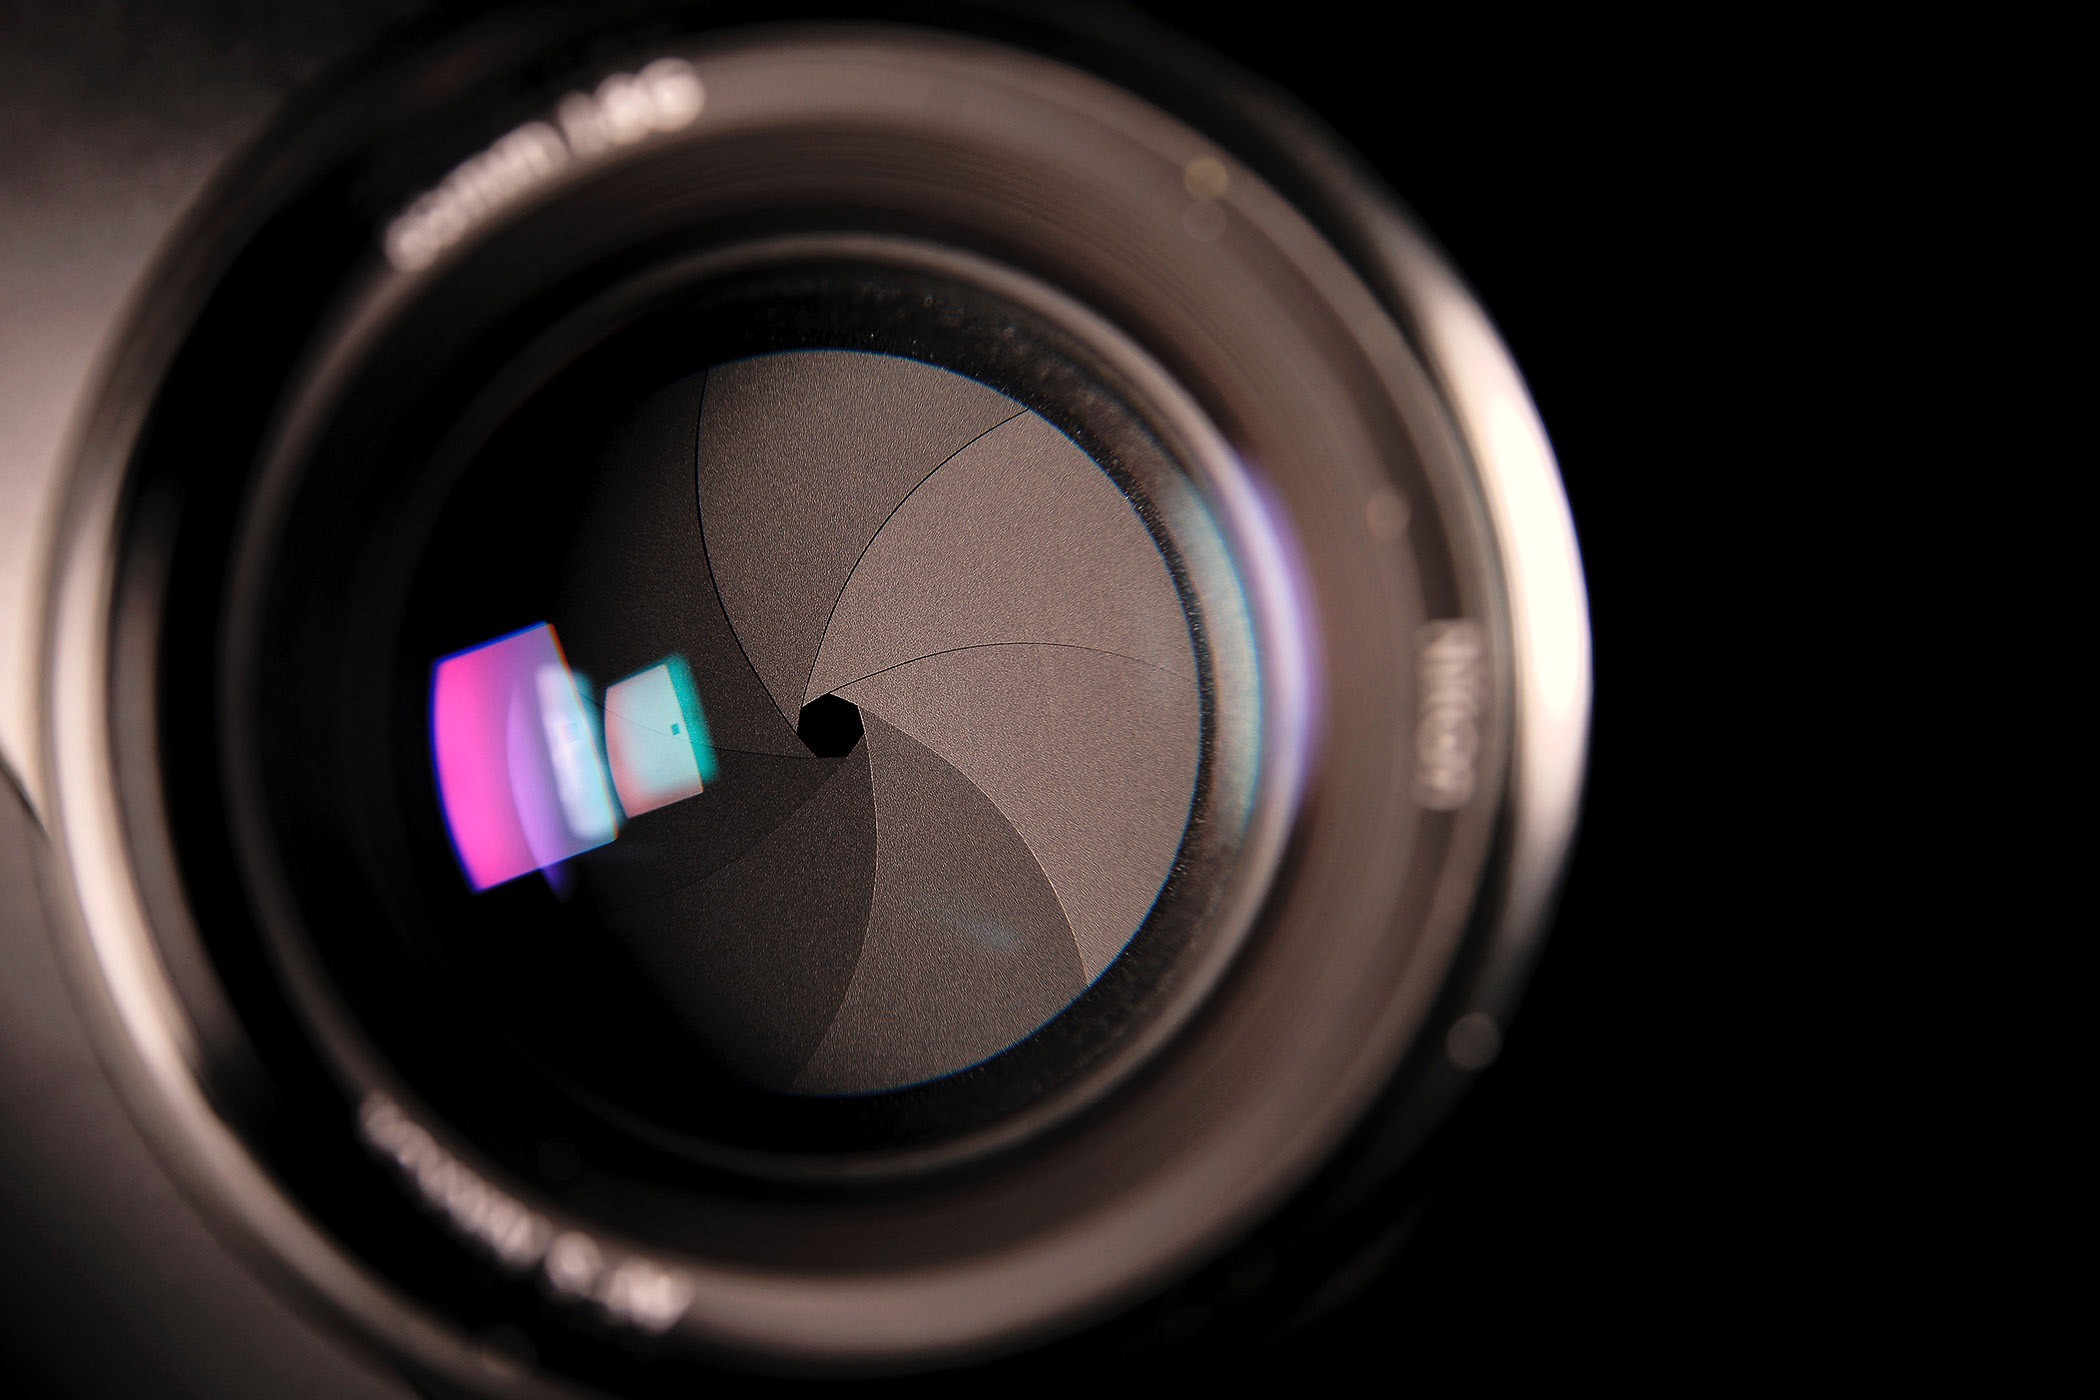 Zo ziet het diafragma er in de lens uit.